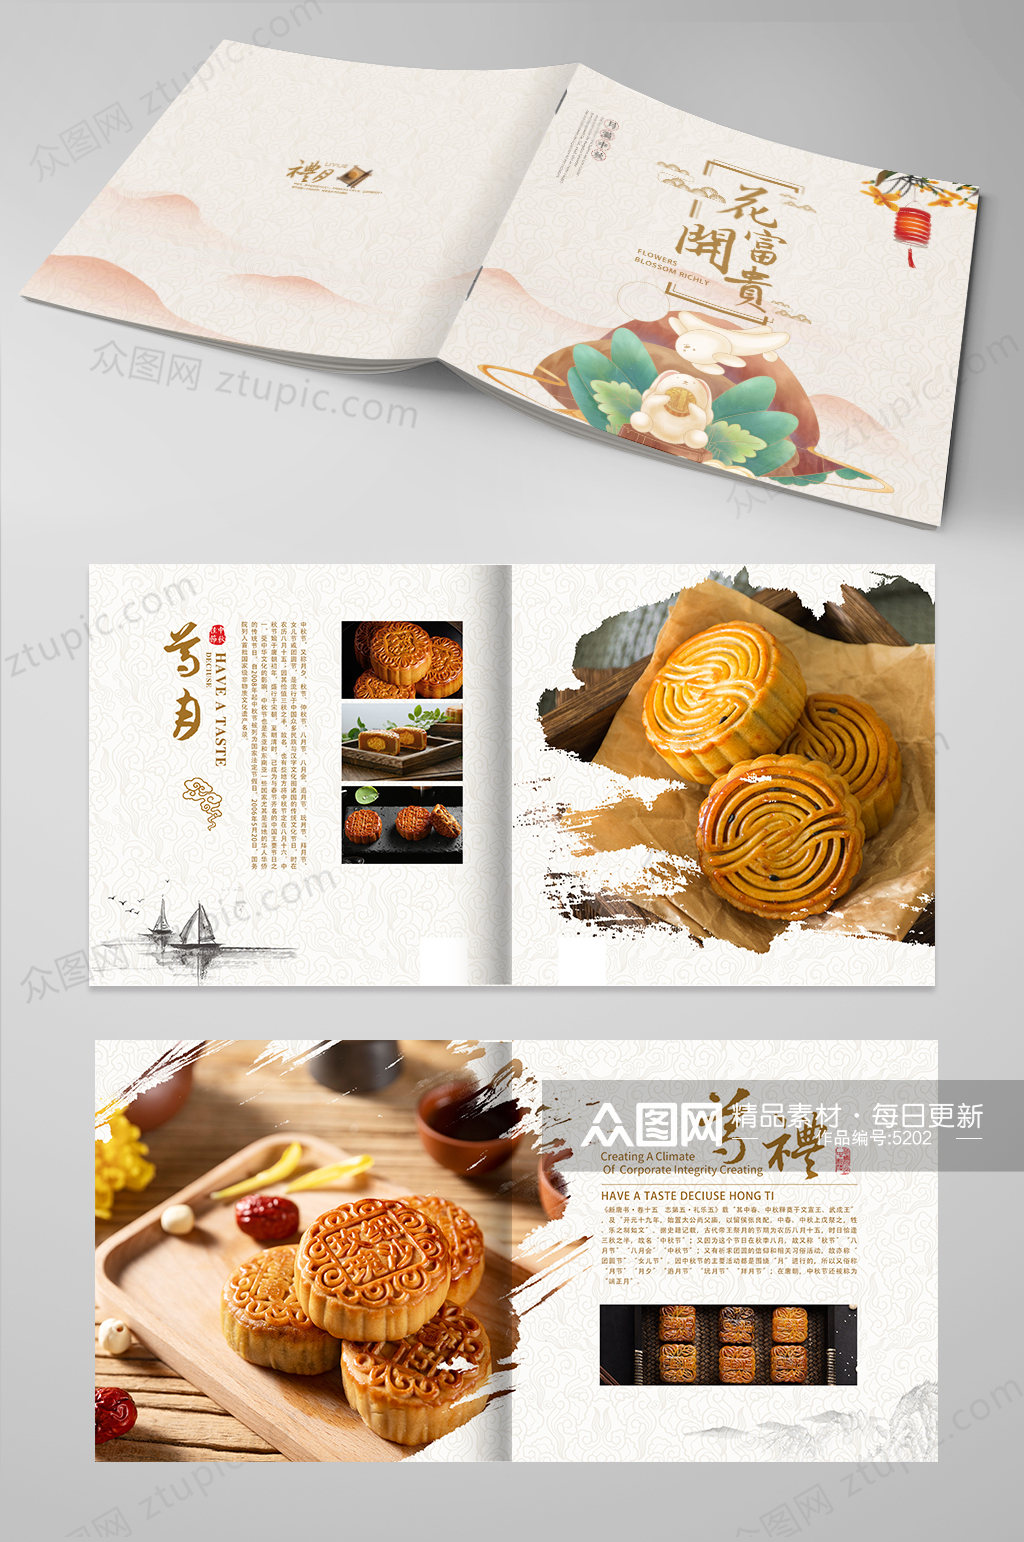 原创中秋节月饼画册设计素材